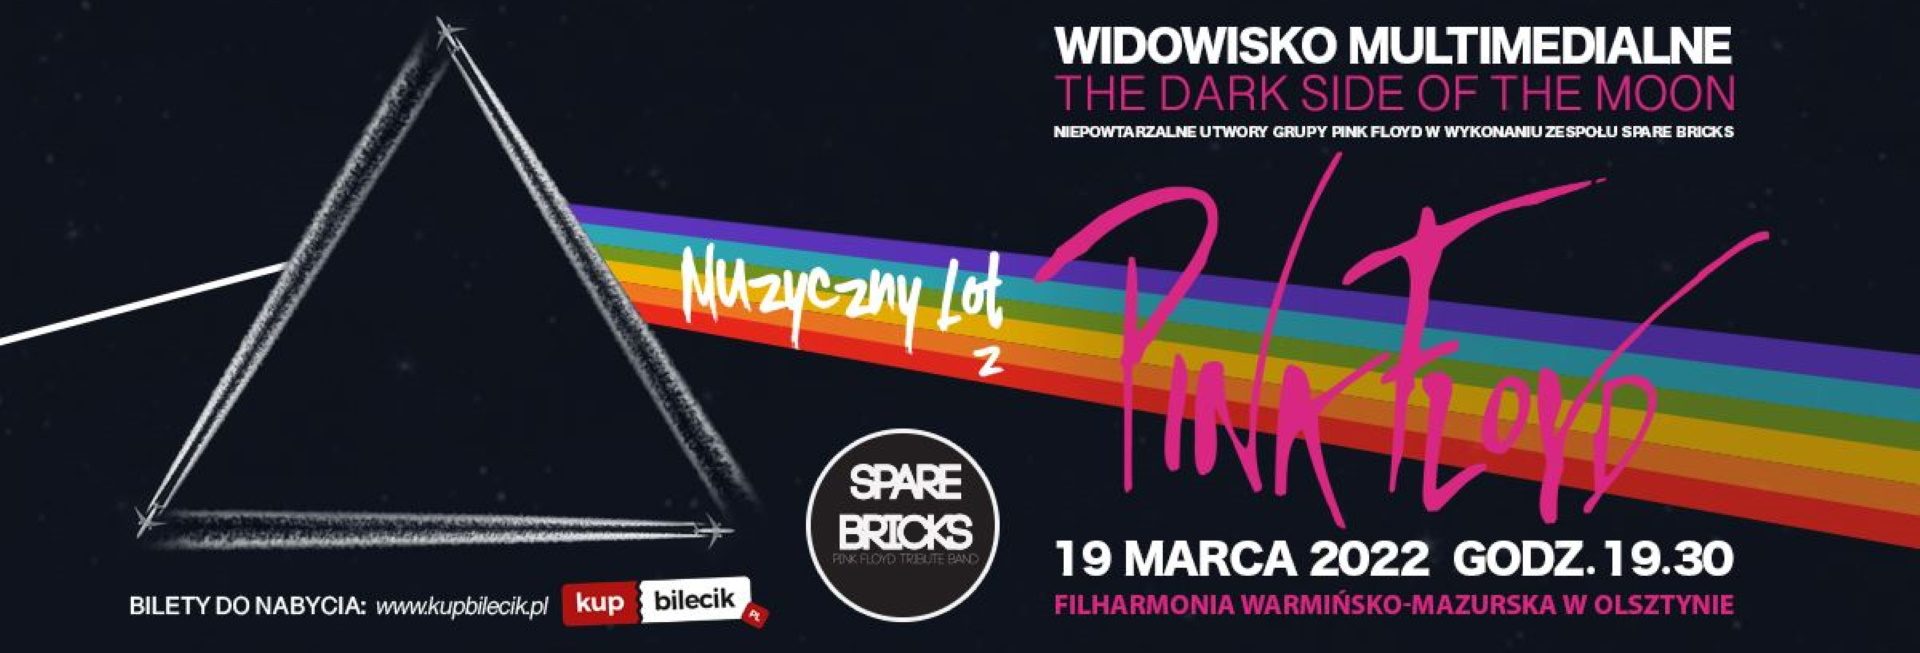 Plakat graficzny zapraszający do Olsztyna na koncert - widowisko multimedialne "Muzyczny Lot z Pink Floyd" Filharmonia Olsztyn 2022.